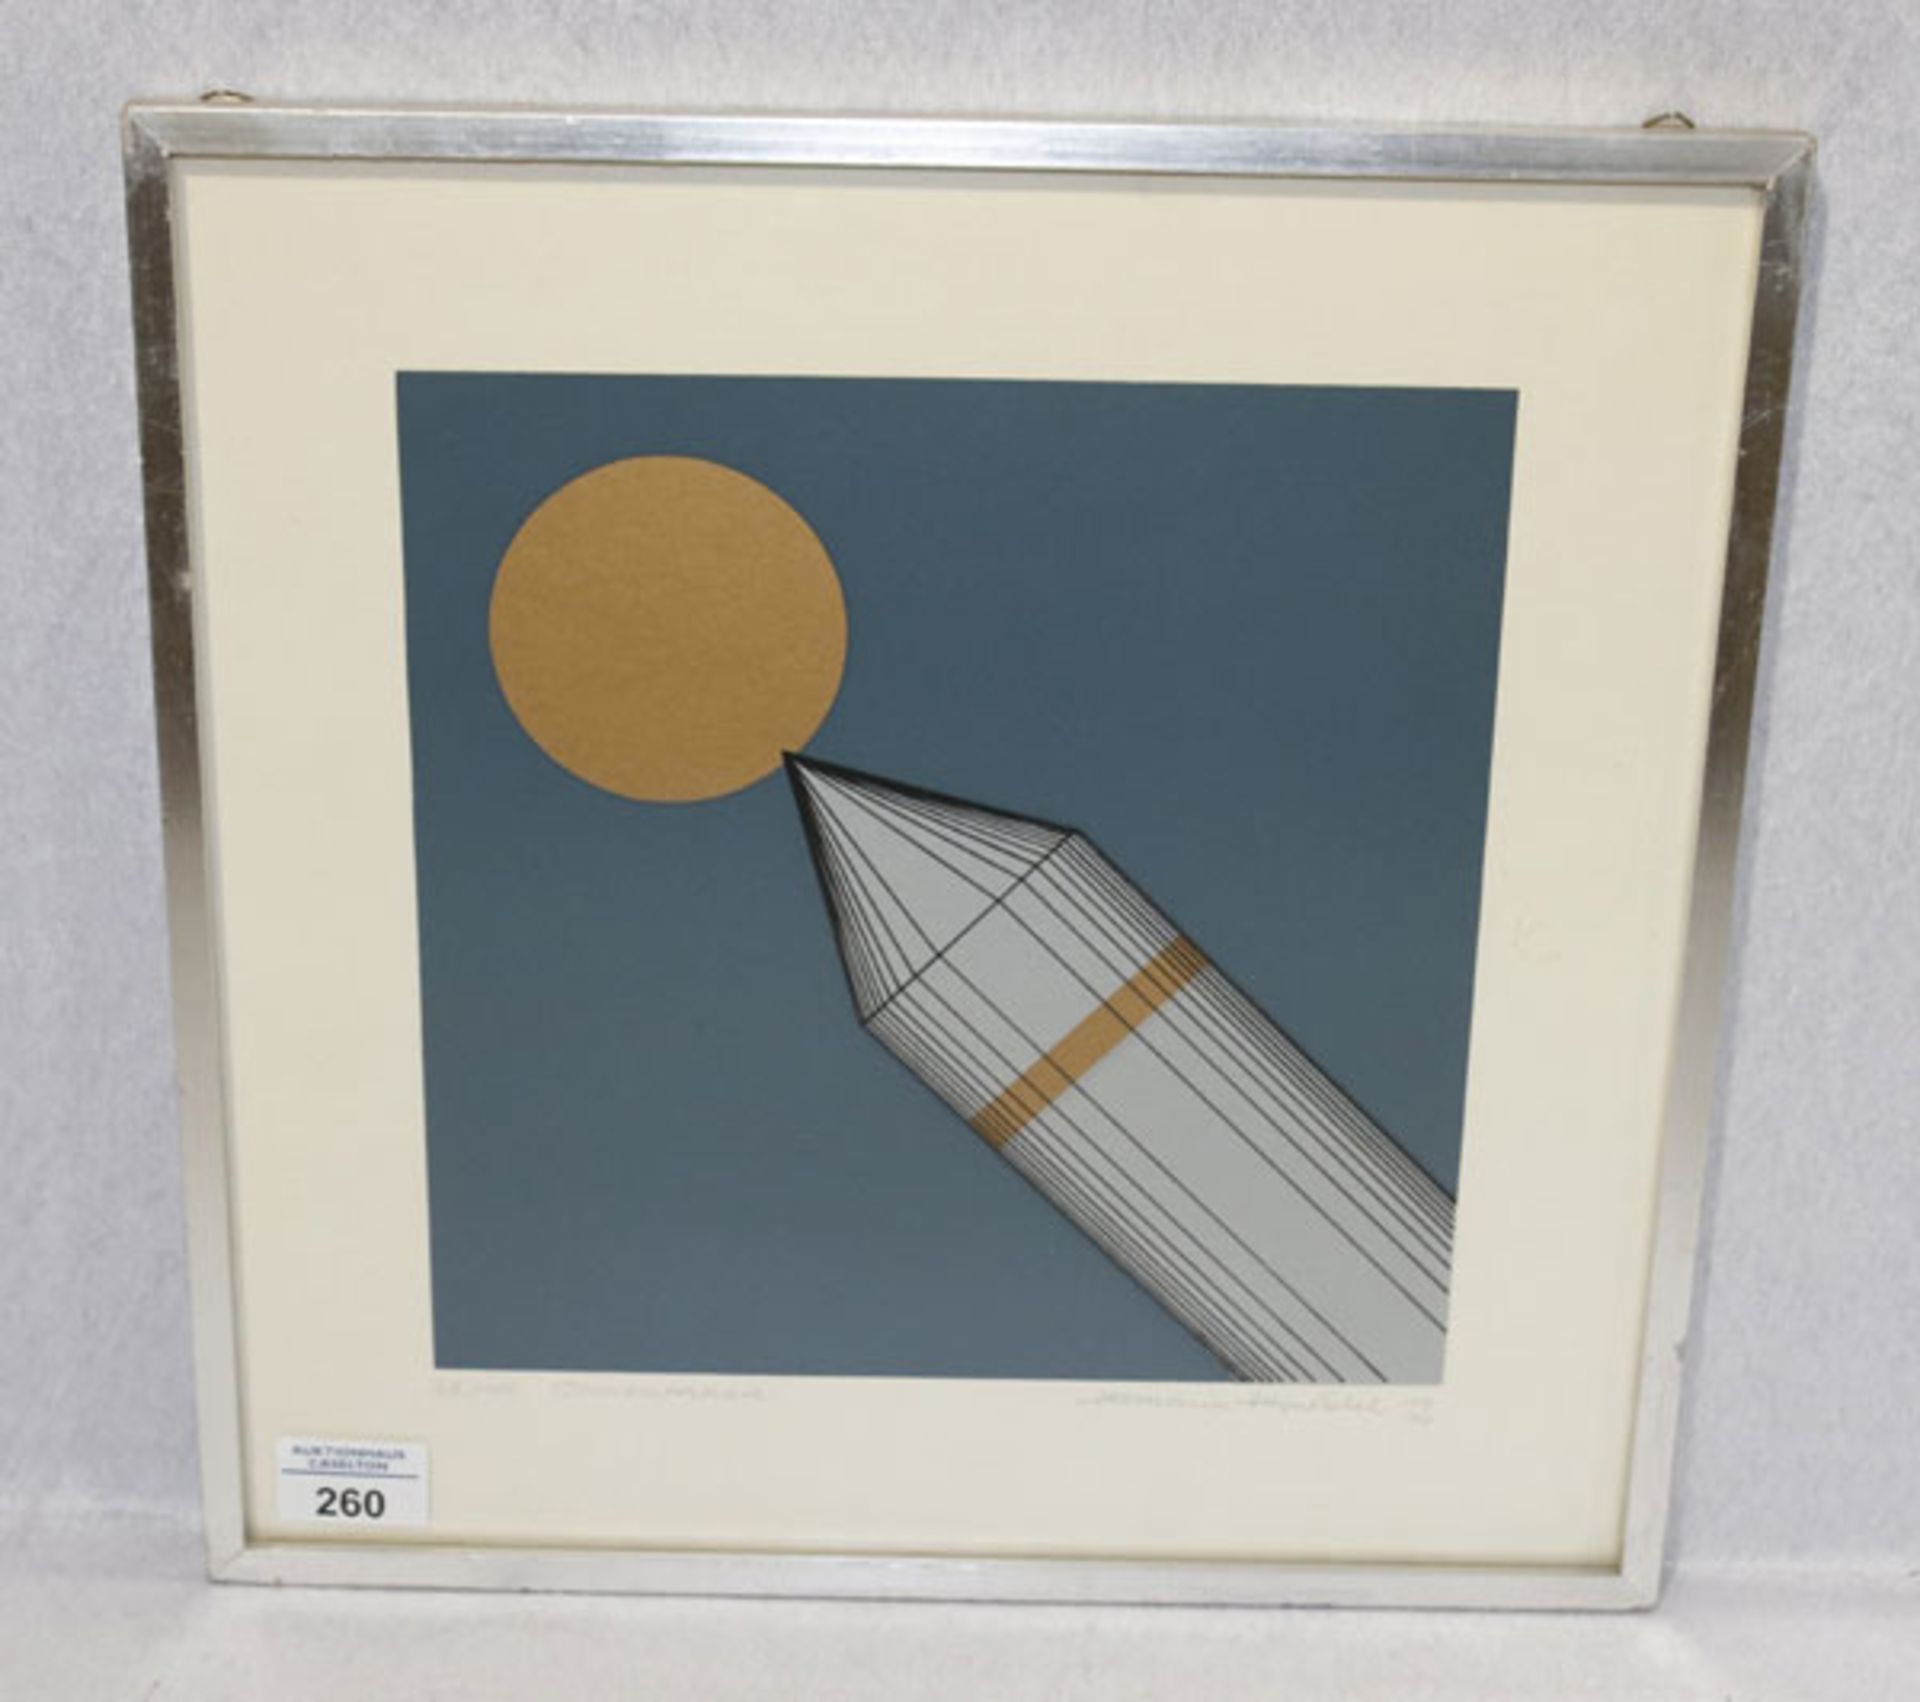 Lithographie 'Sonnenrakete', Nr. 38/100, signiert Hermann Heintschel, 1974, * 1931 + 1998, deutscher